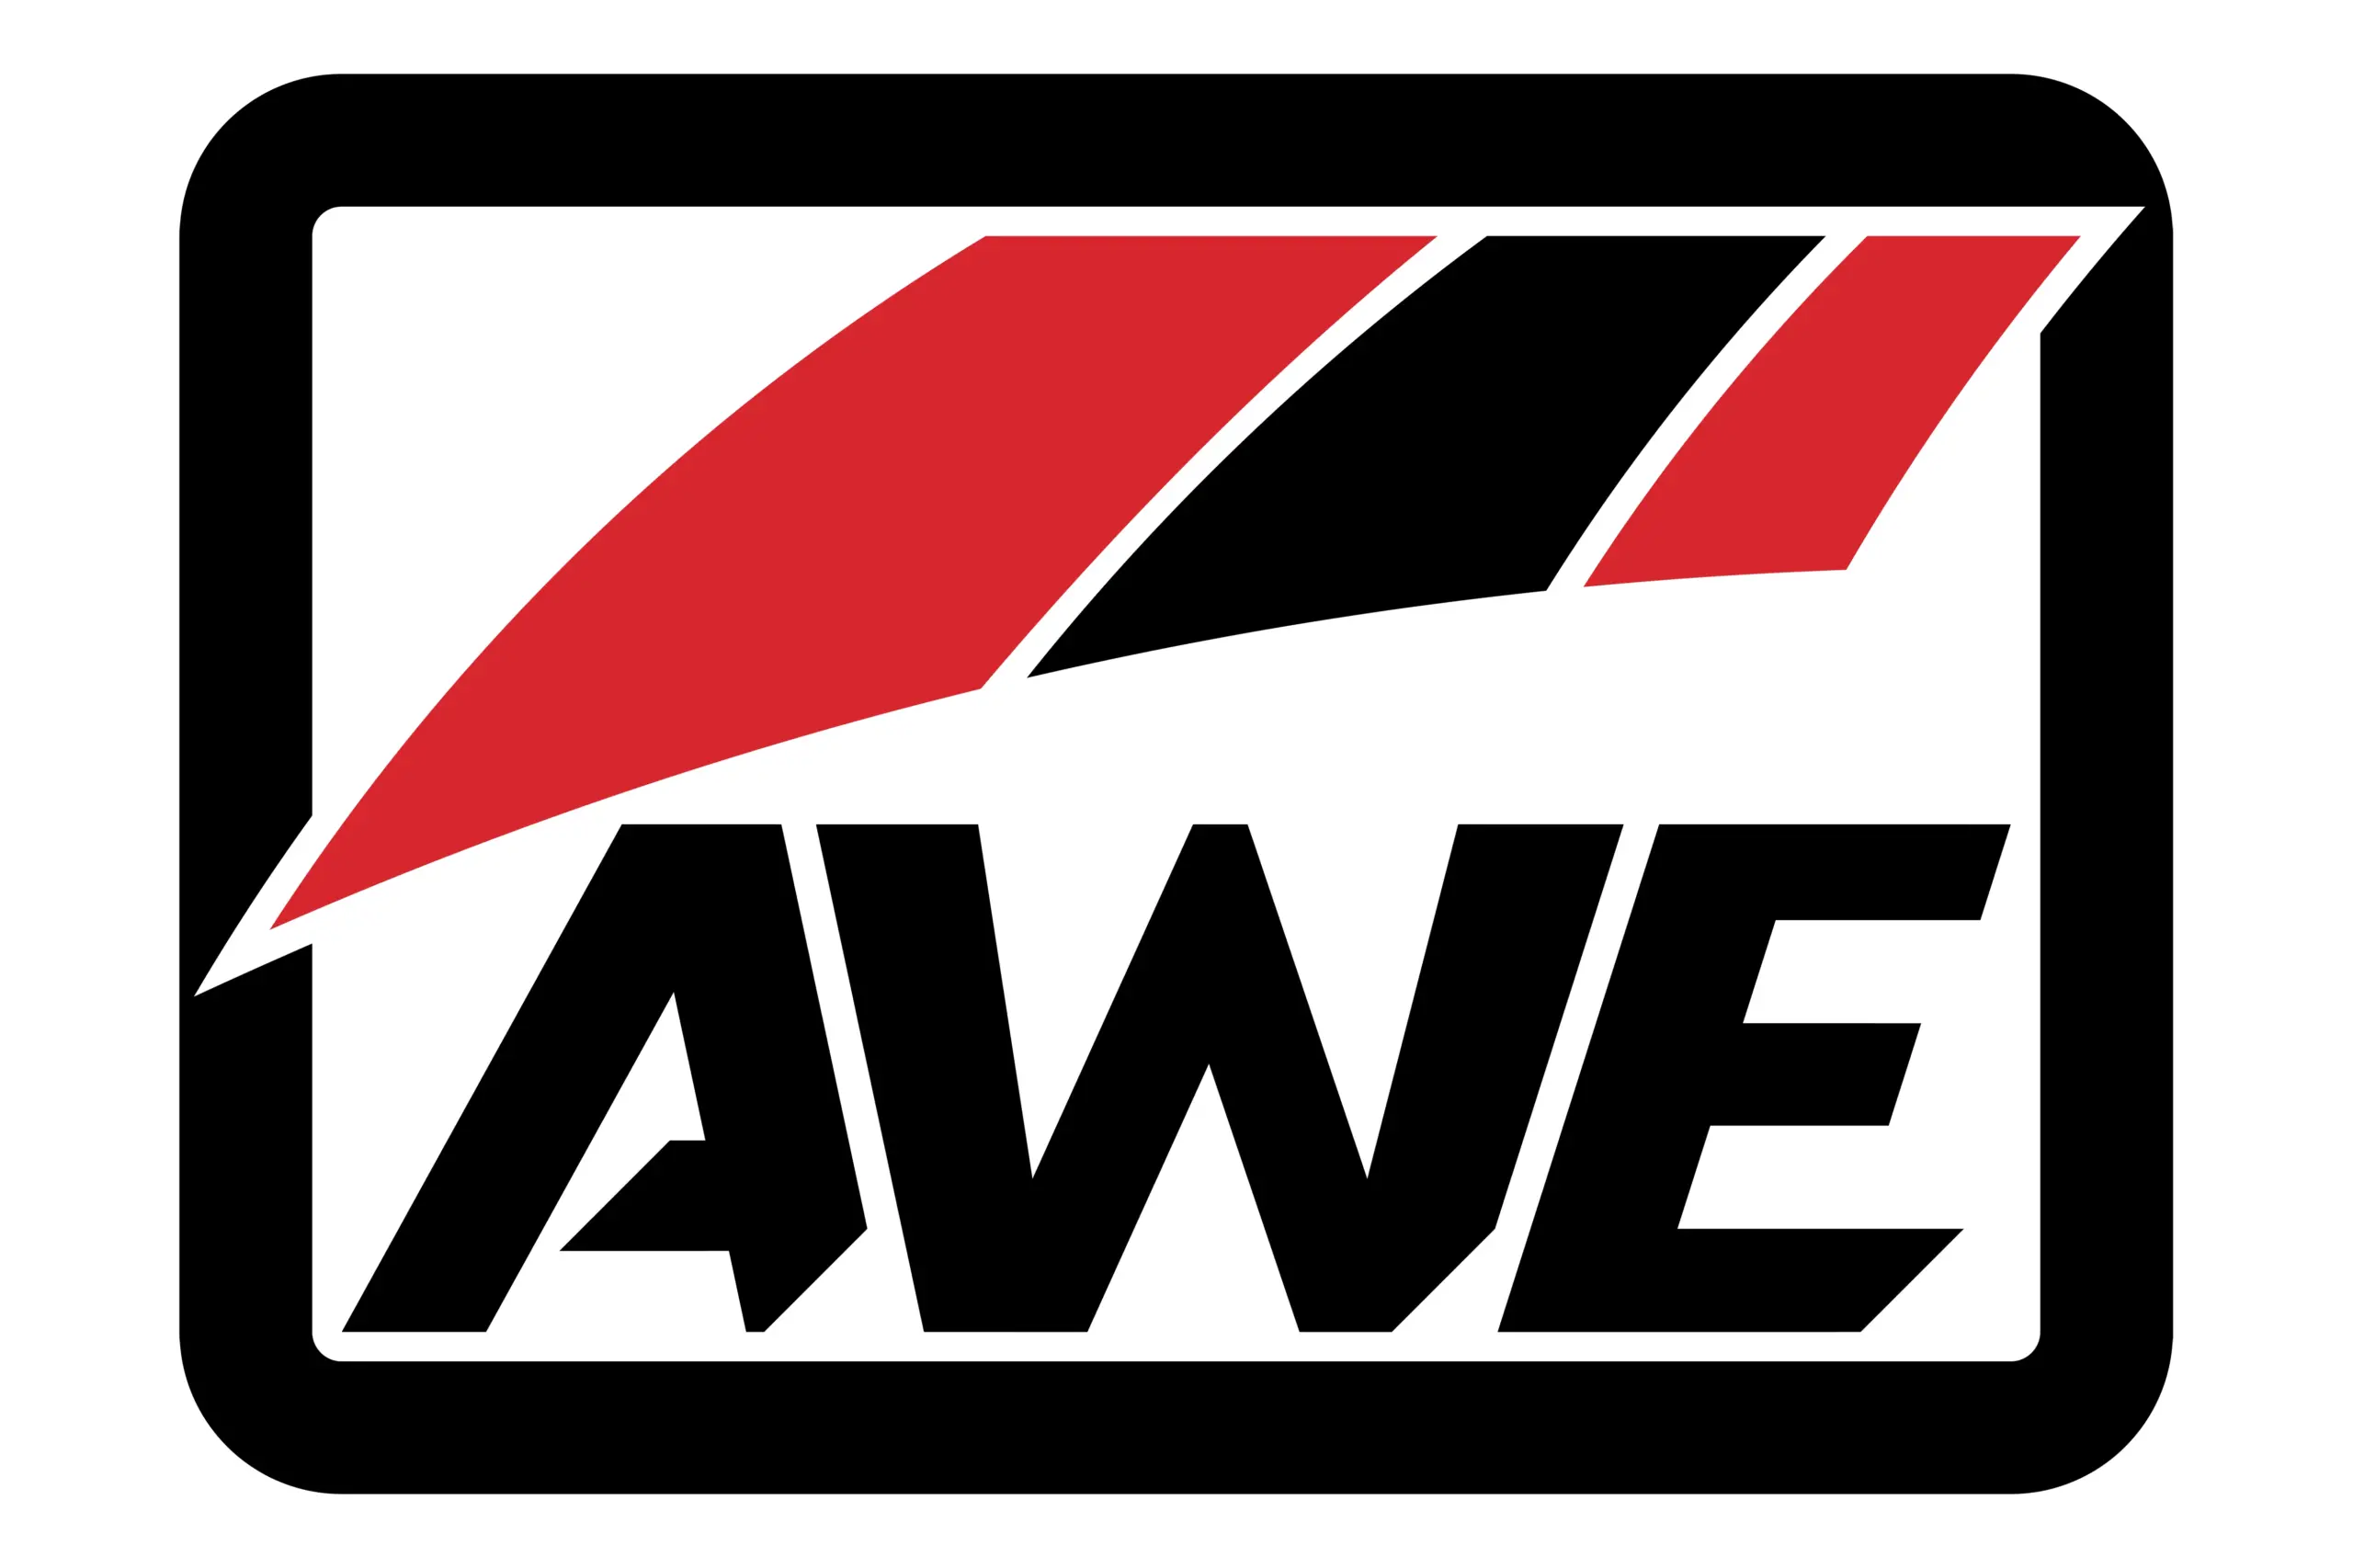 AWE logo